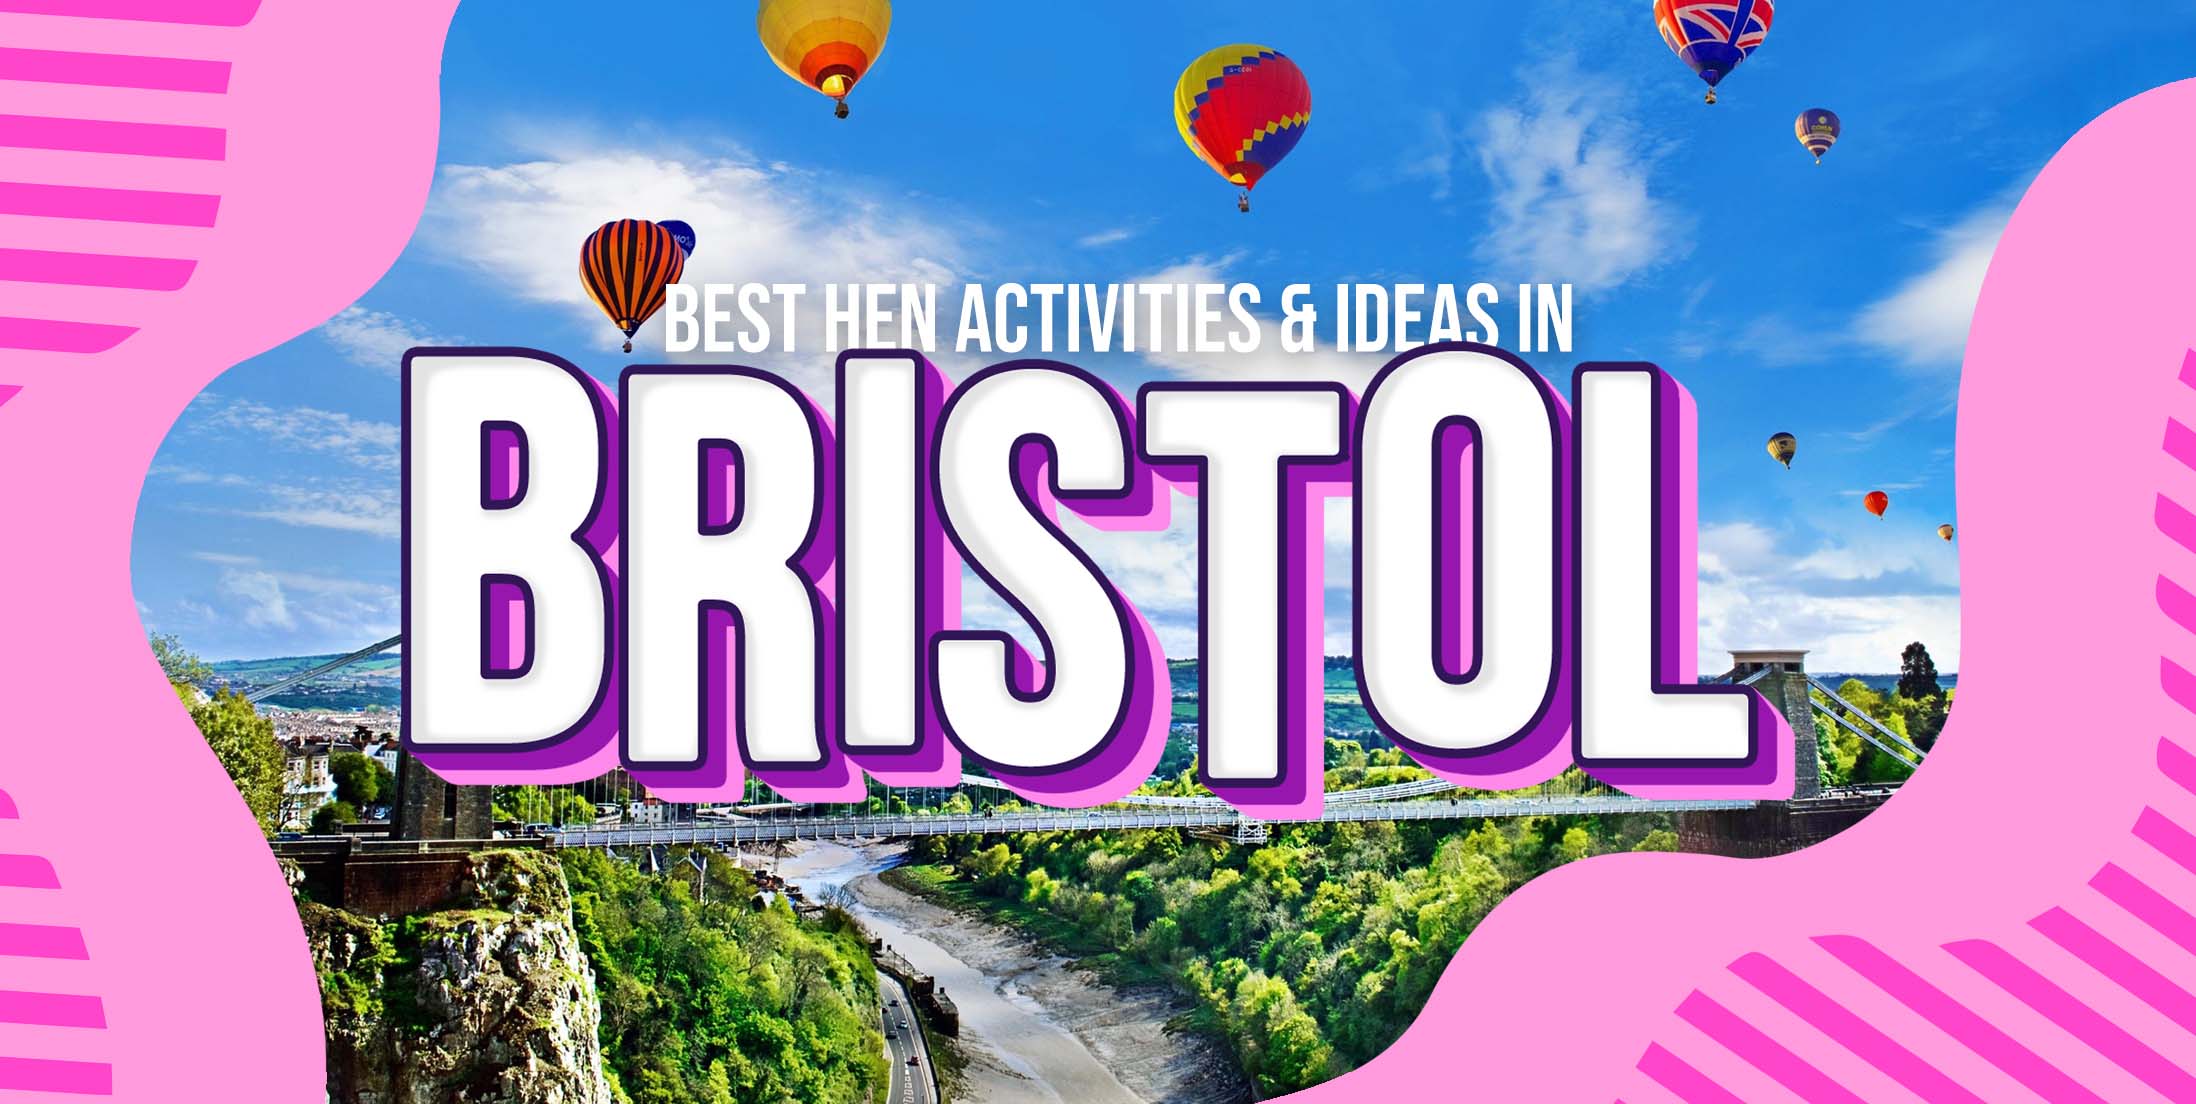 11 Best Hen Party Activities & Ideas in Bristol